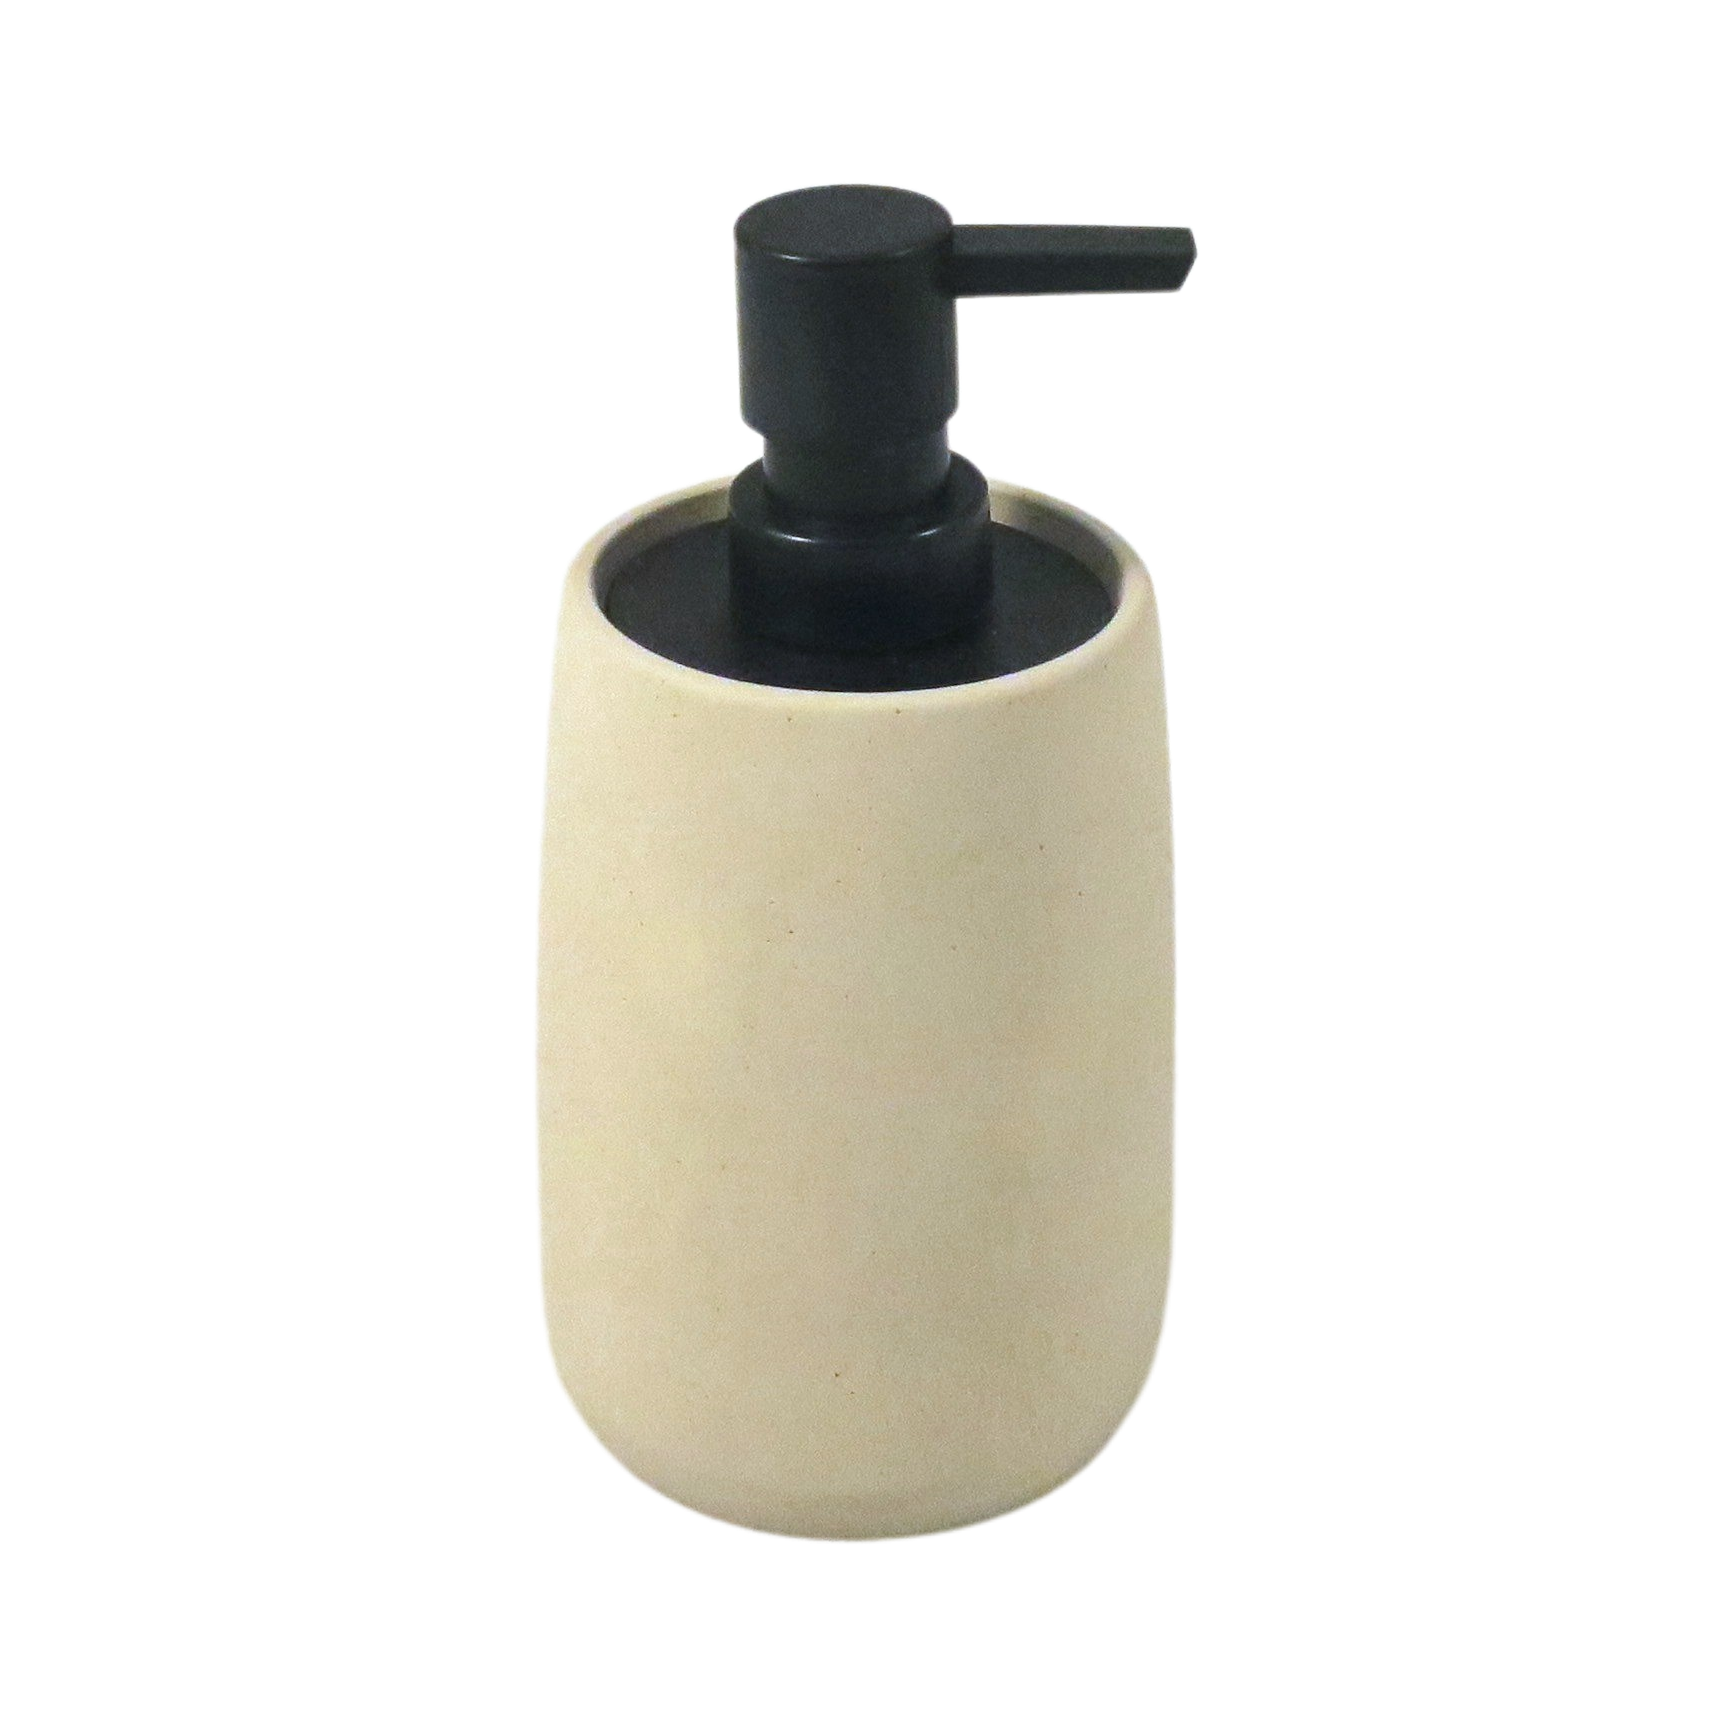 78253 CEMENT Liquid soap dispenser